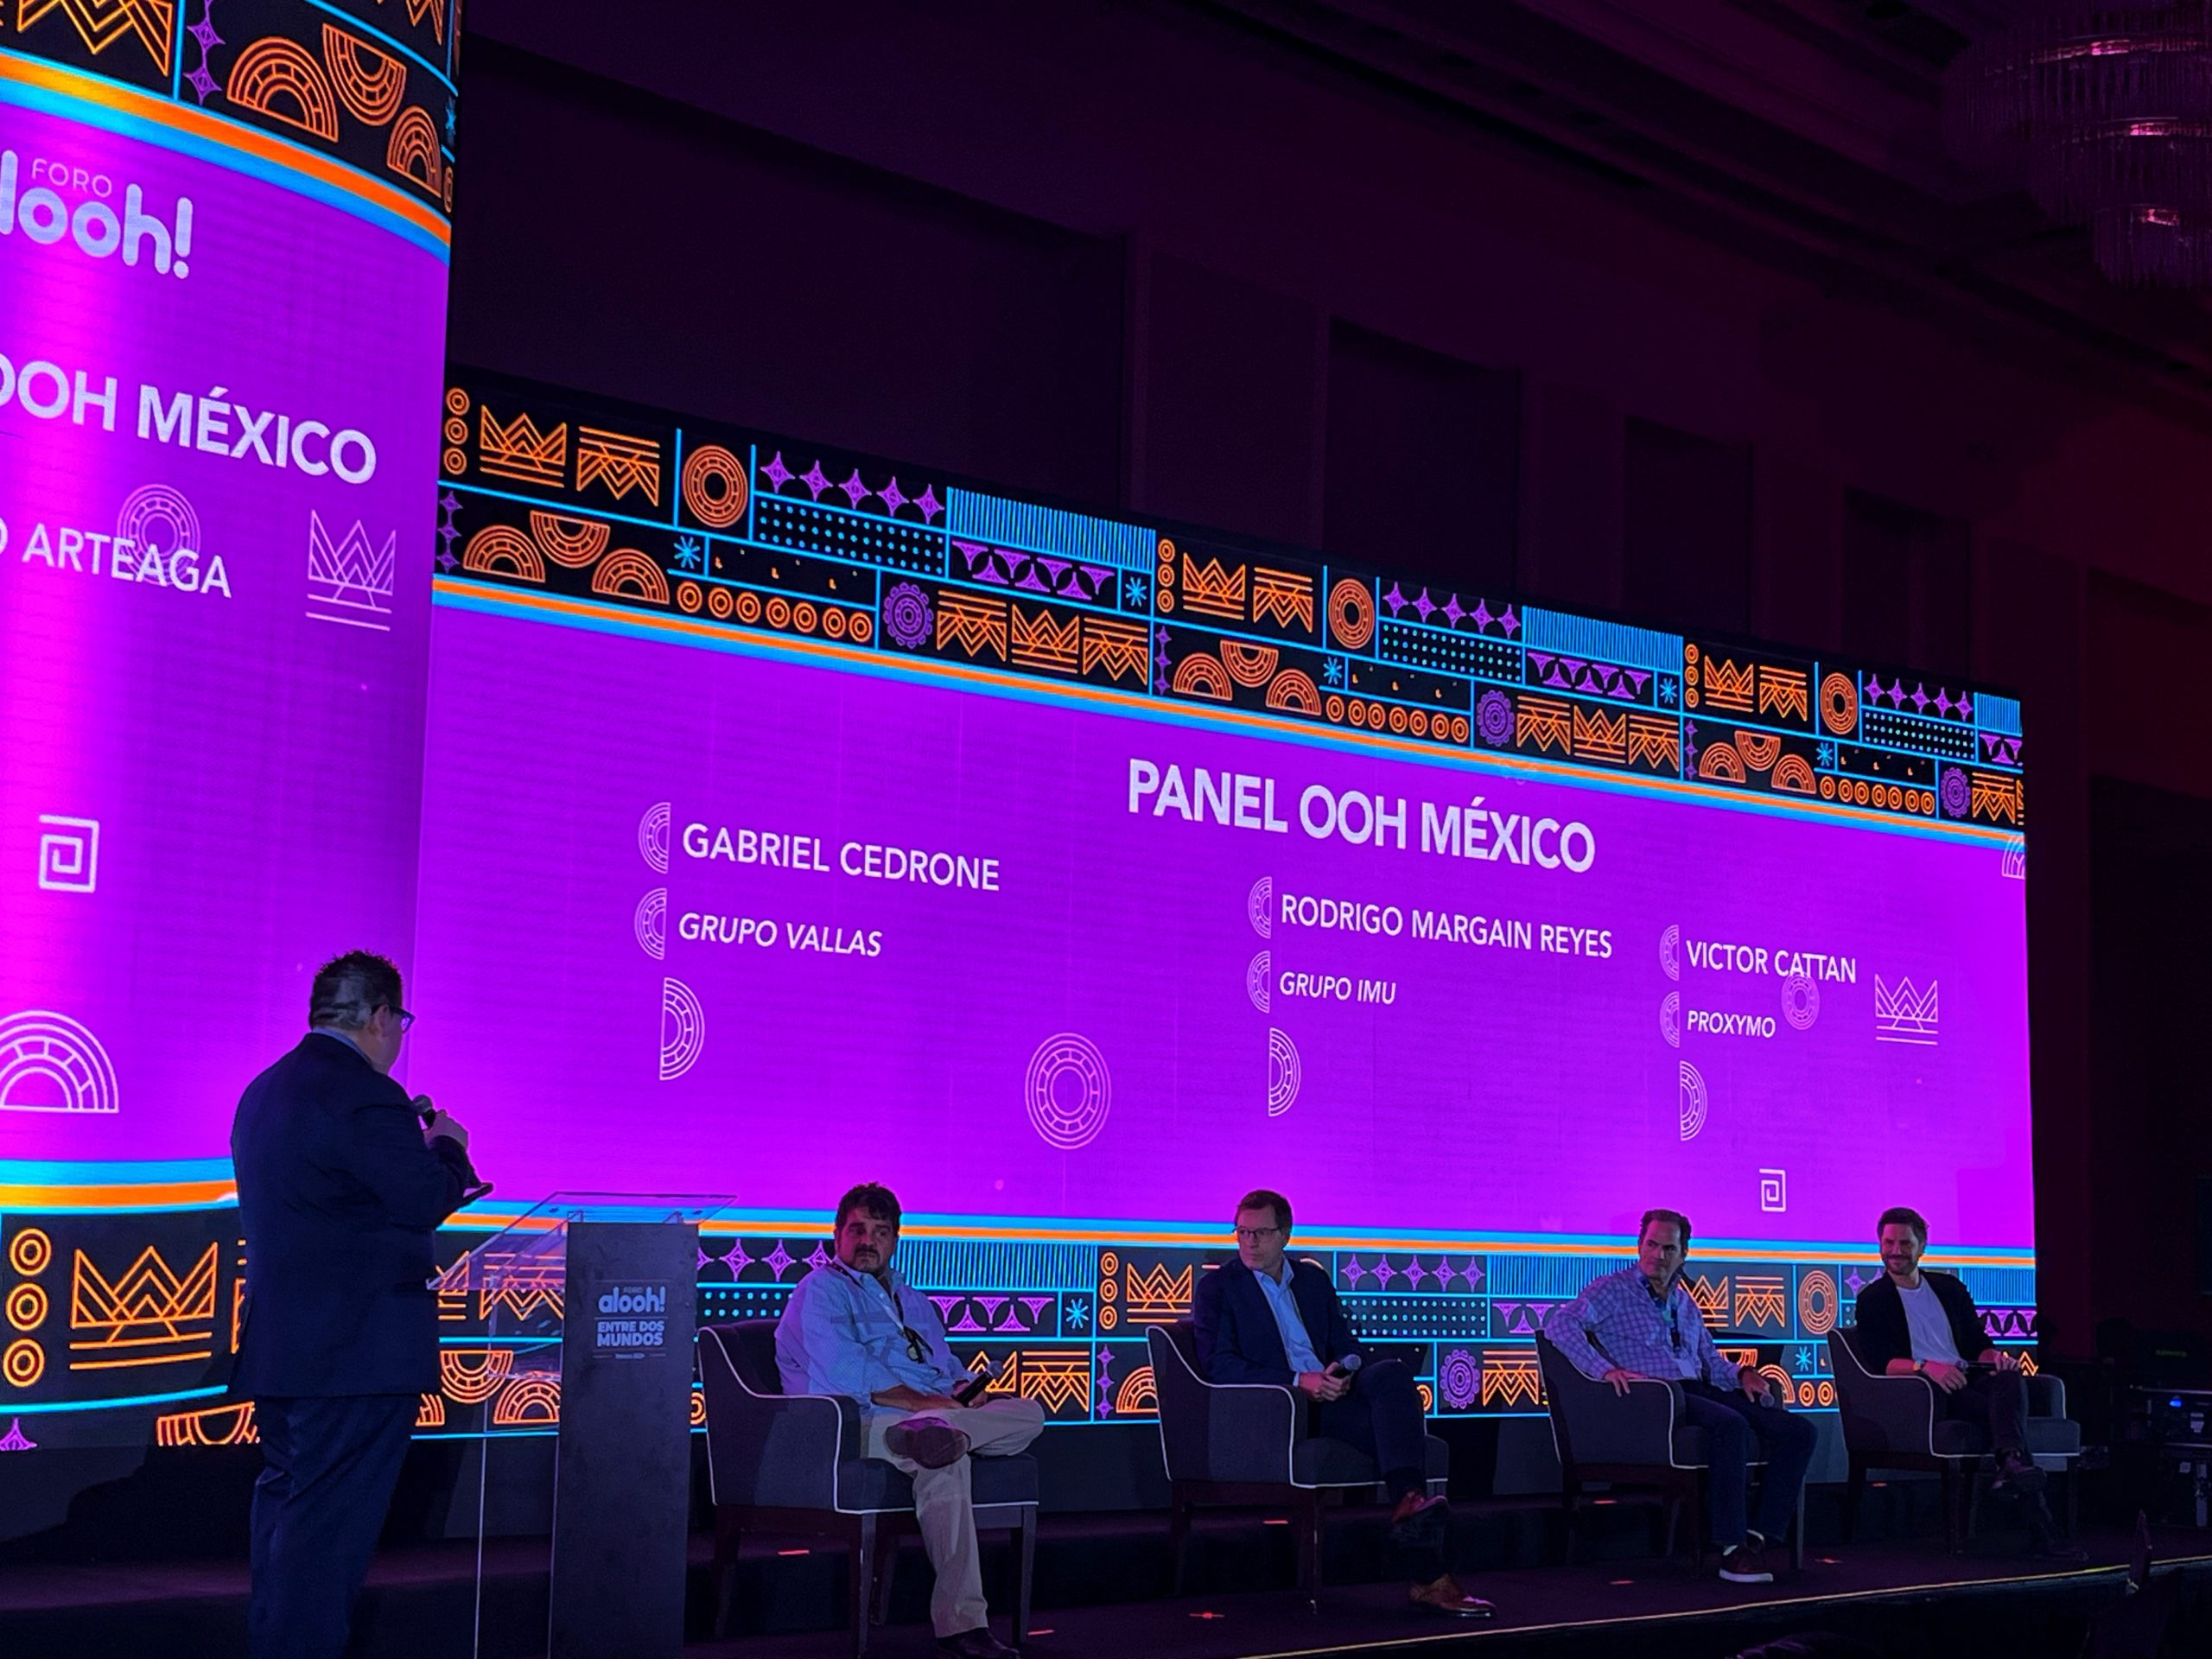 Foro Alooh!: Panel de clausura expone los retos de México y Latinoamérica en publicidad exterior